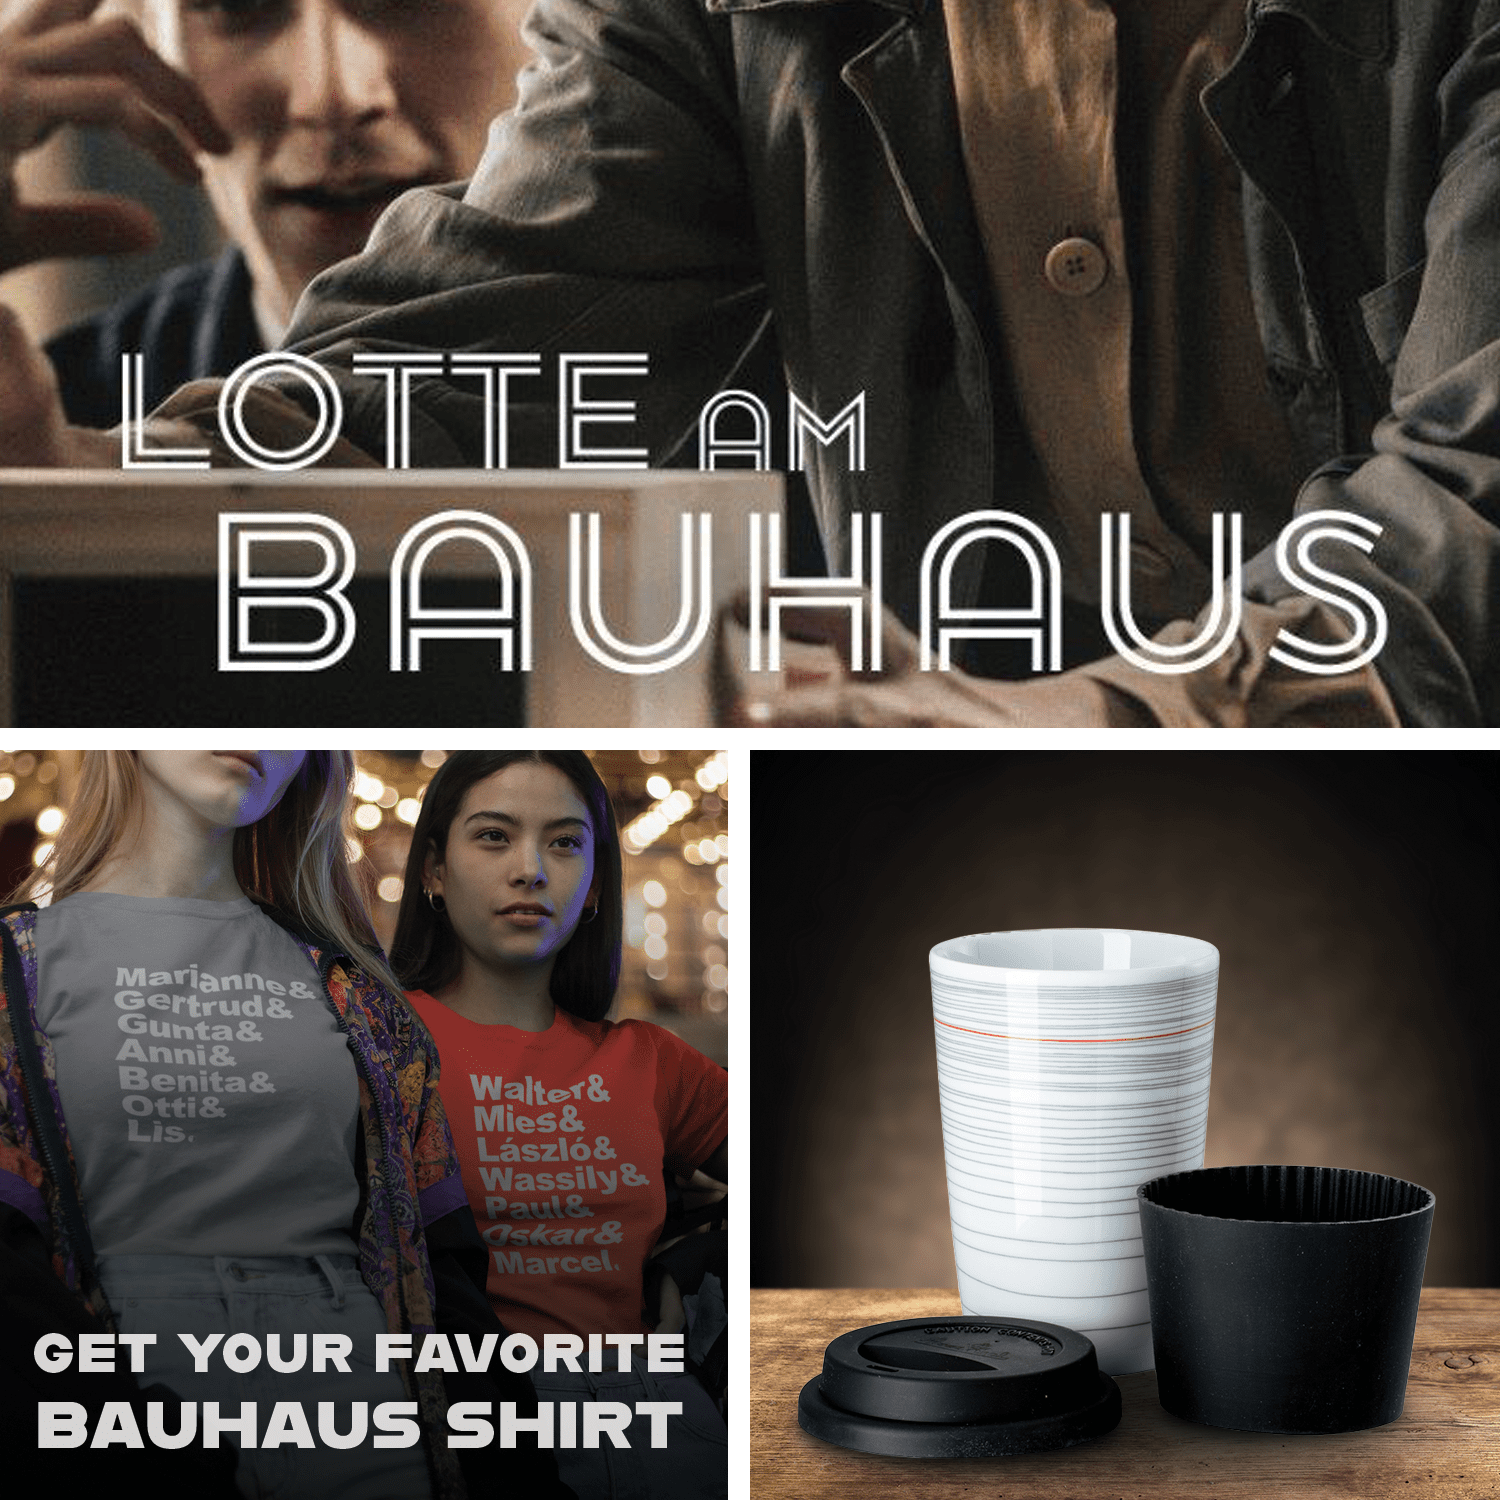 Lotte am Bauhaus + Mug Gropius + Favorite Shirt的图片
